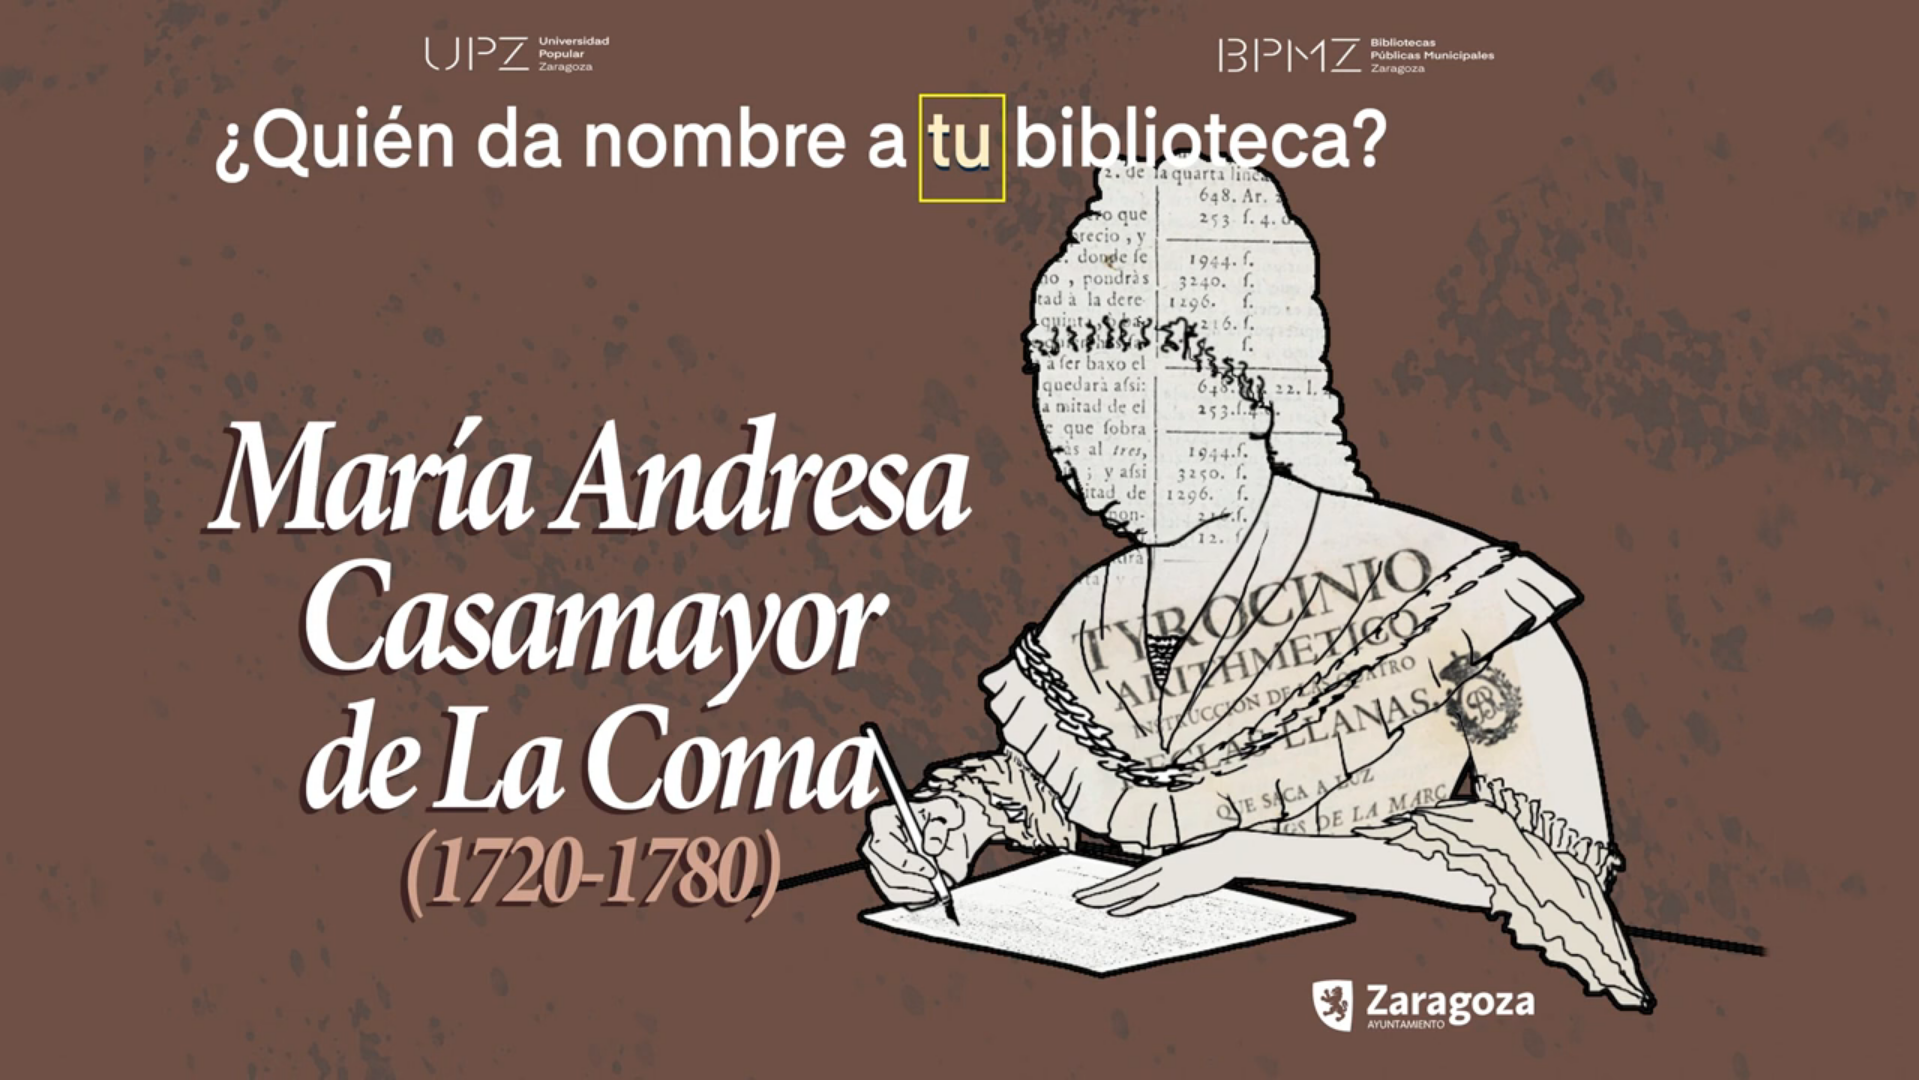 Andresa Casamayor